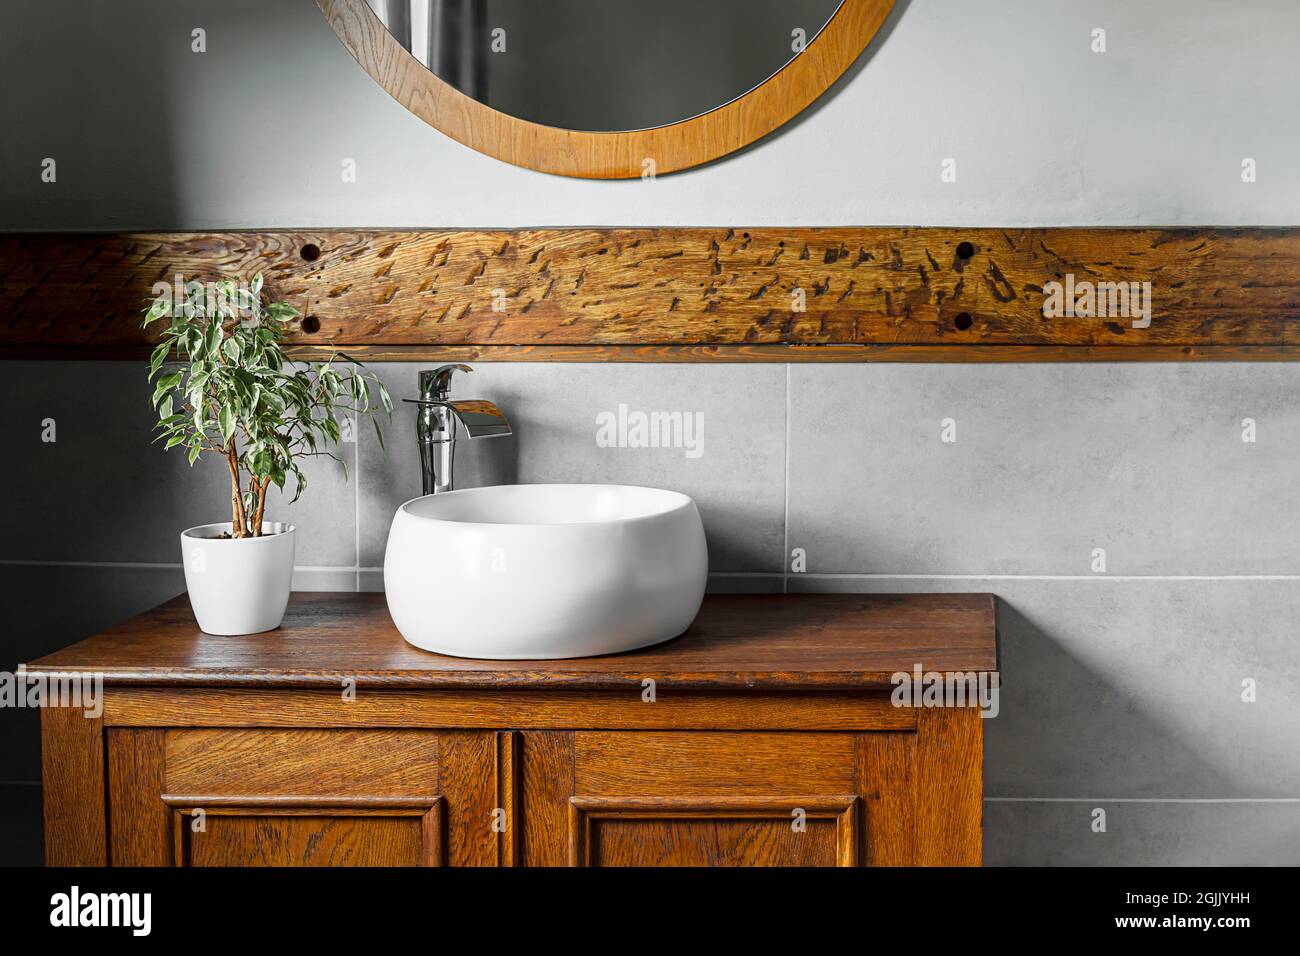 Badezimmer mit moderner Ausstattung und rustikalen Elementen und einem Ficus in einem weißen Blumentopf Stockfoto